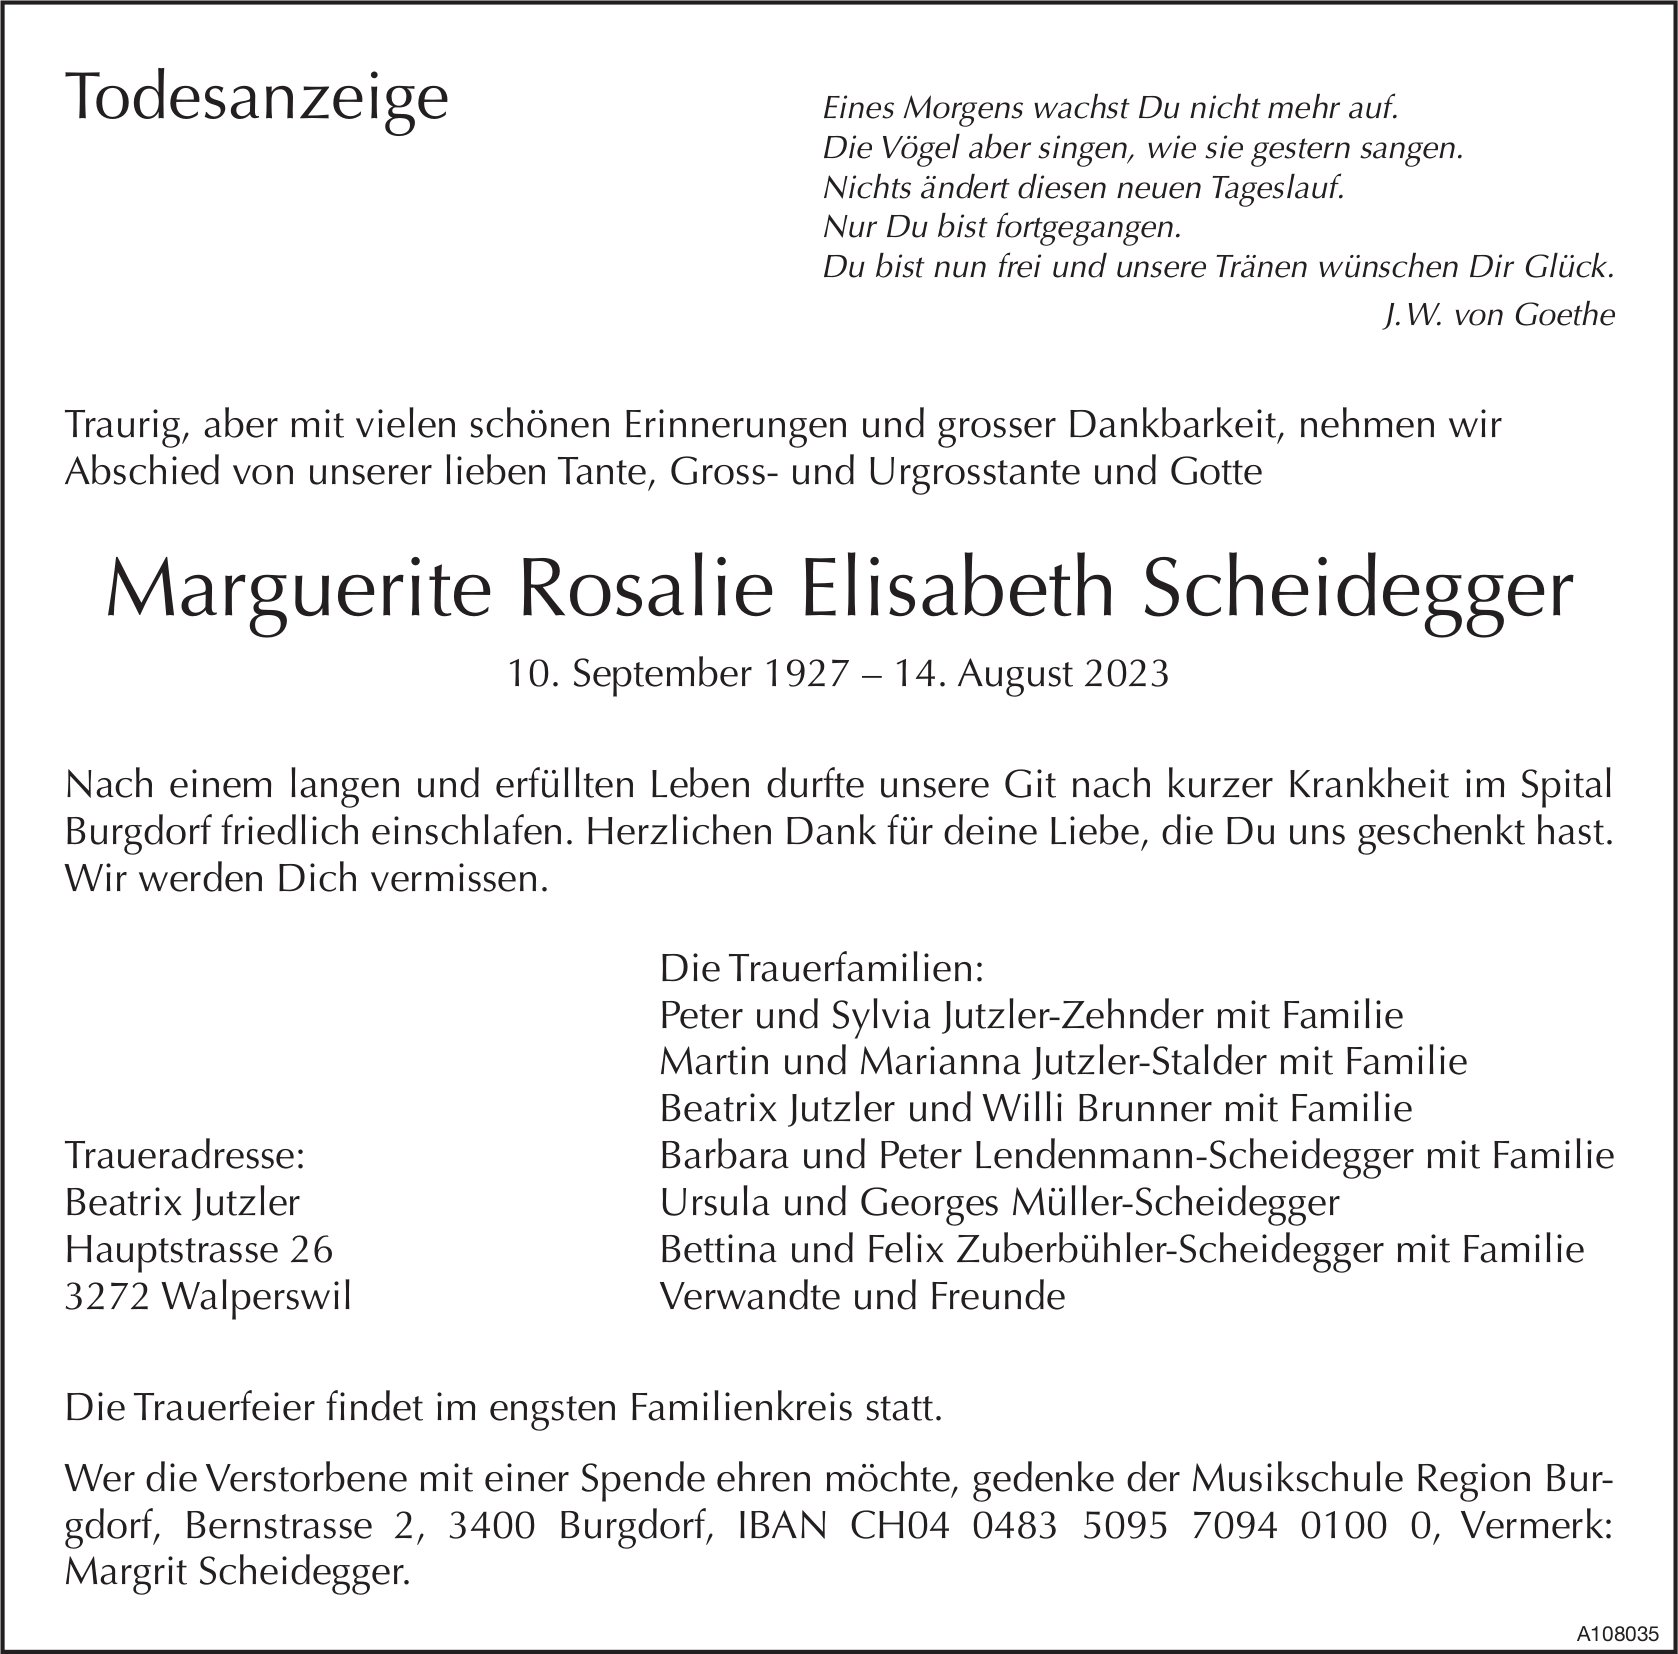 Marguerite Rosalie Elisabeth Scheidegger, August 2023 / TA